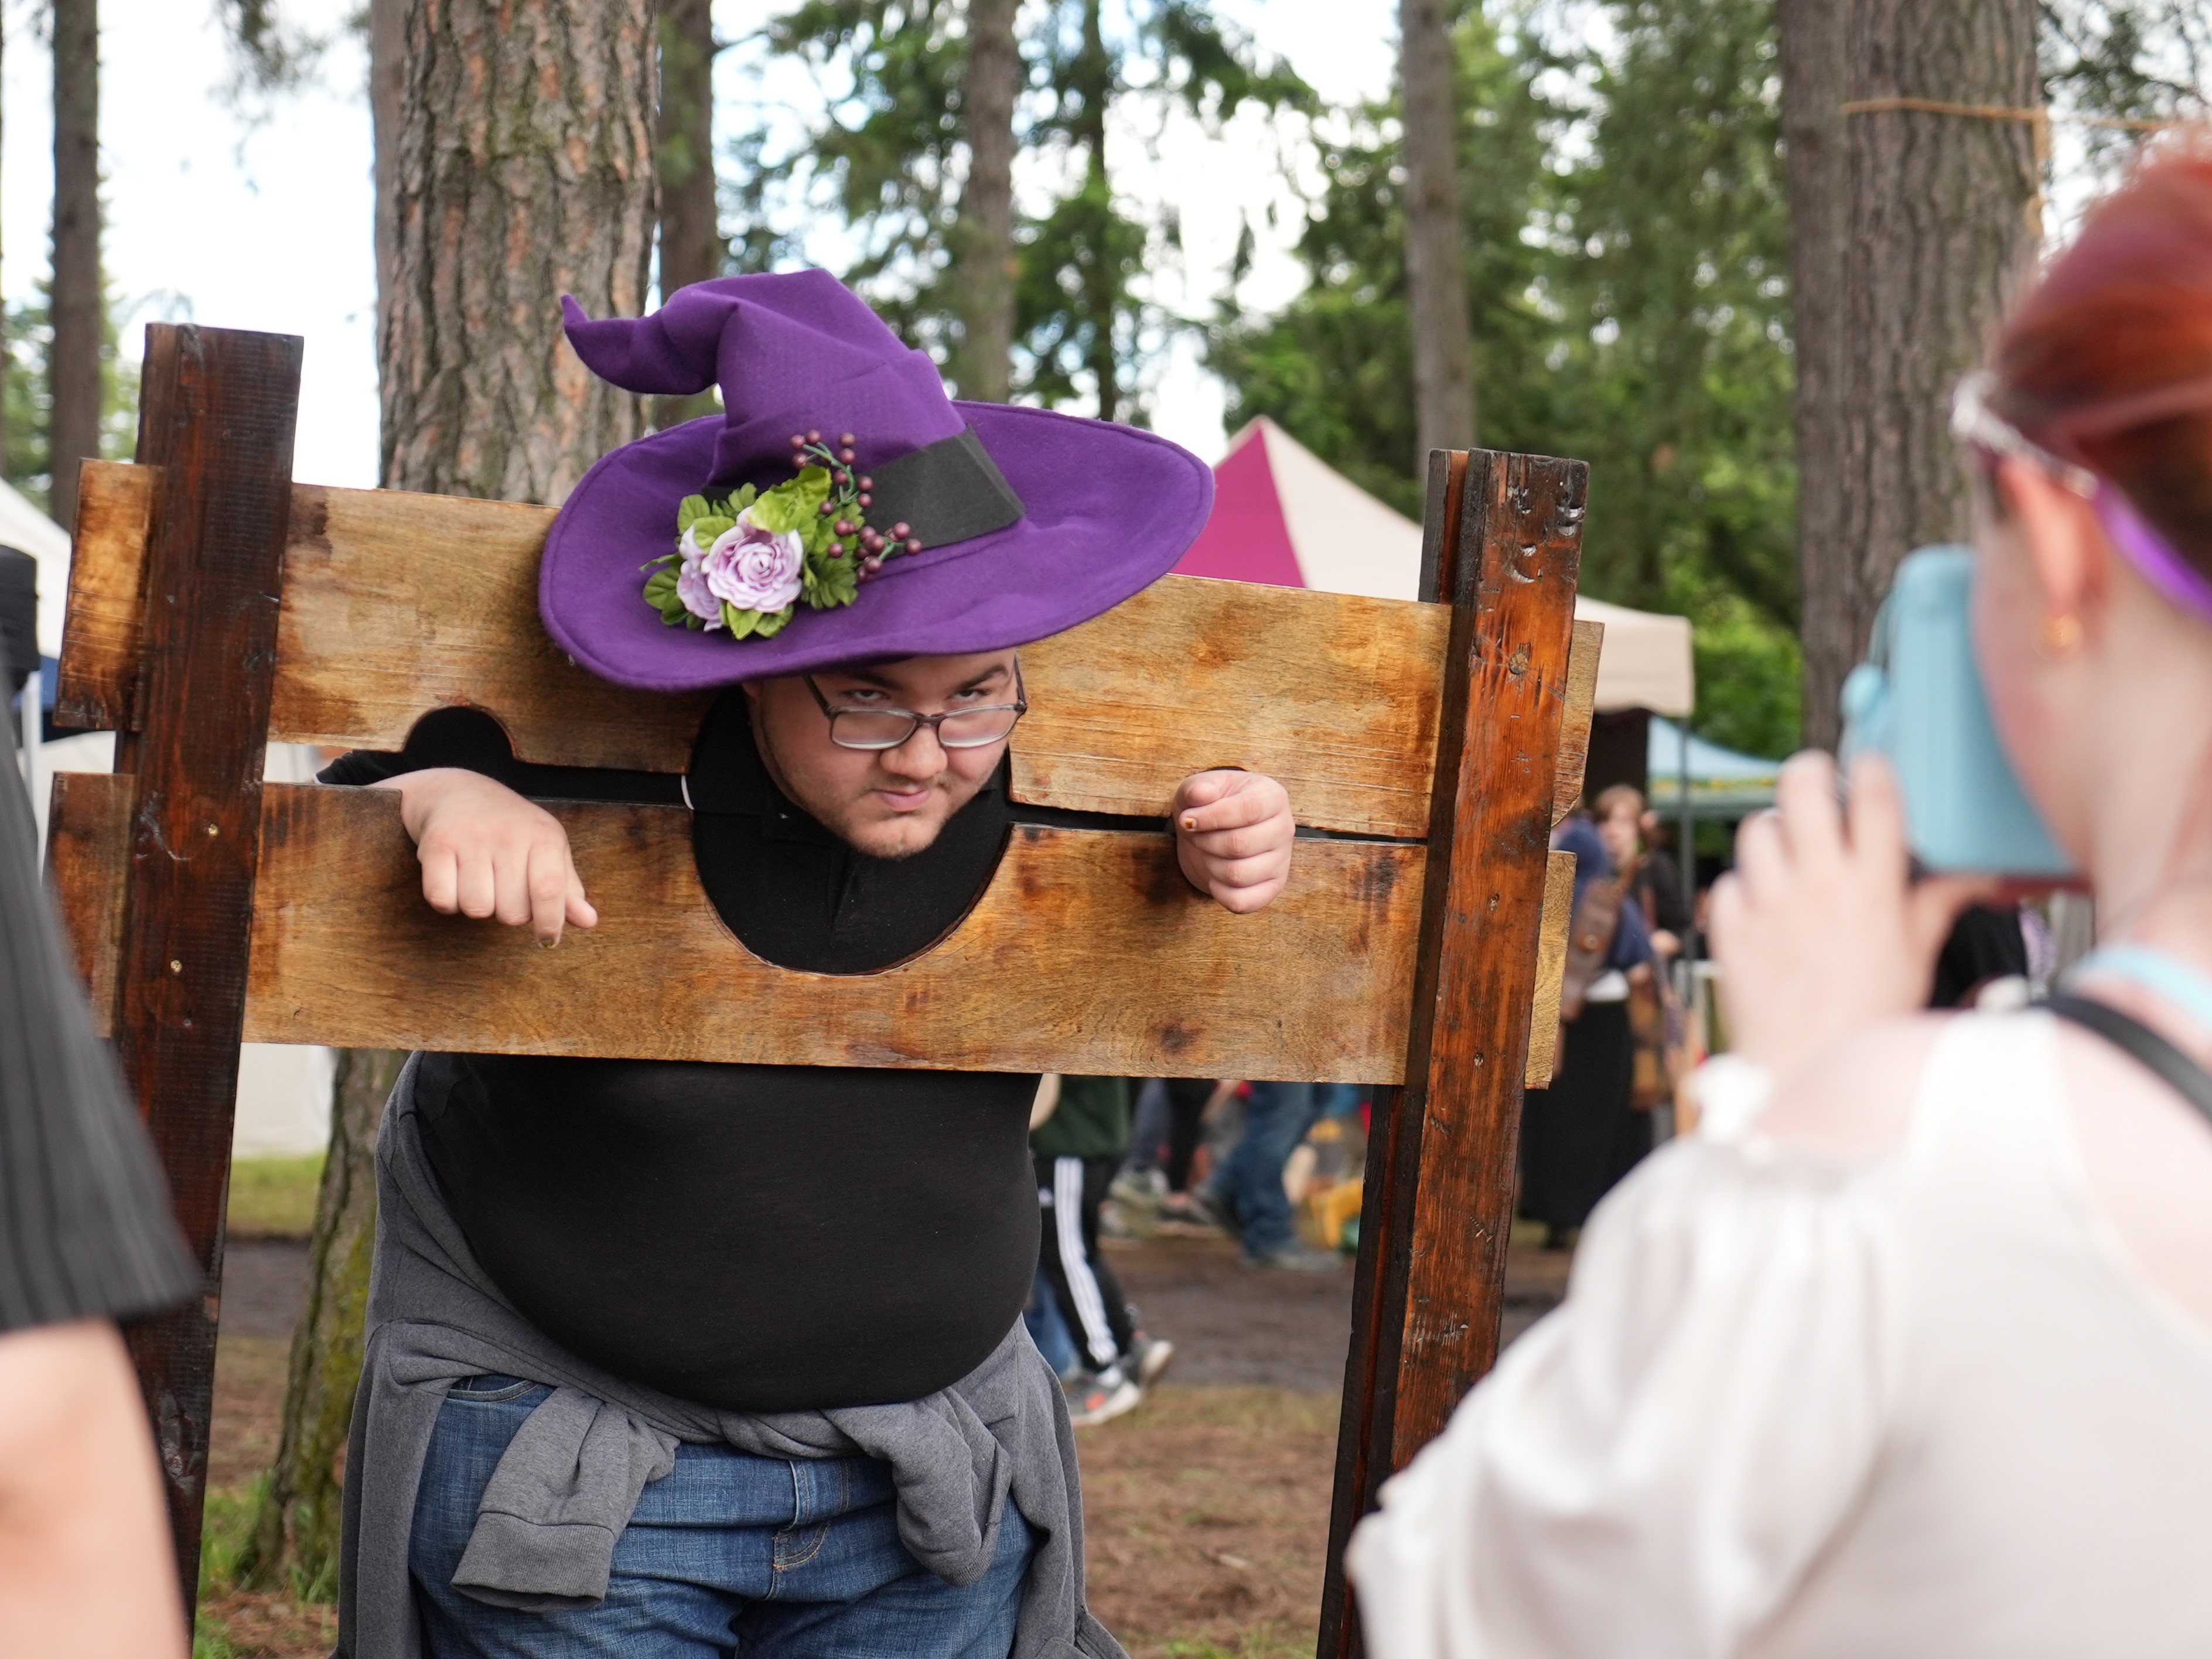 Oregon Renaissance Faire returns to Clackamas fairgrounds for two